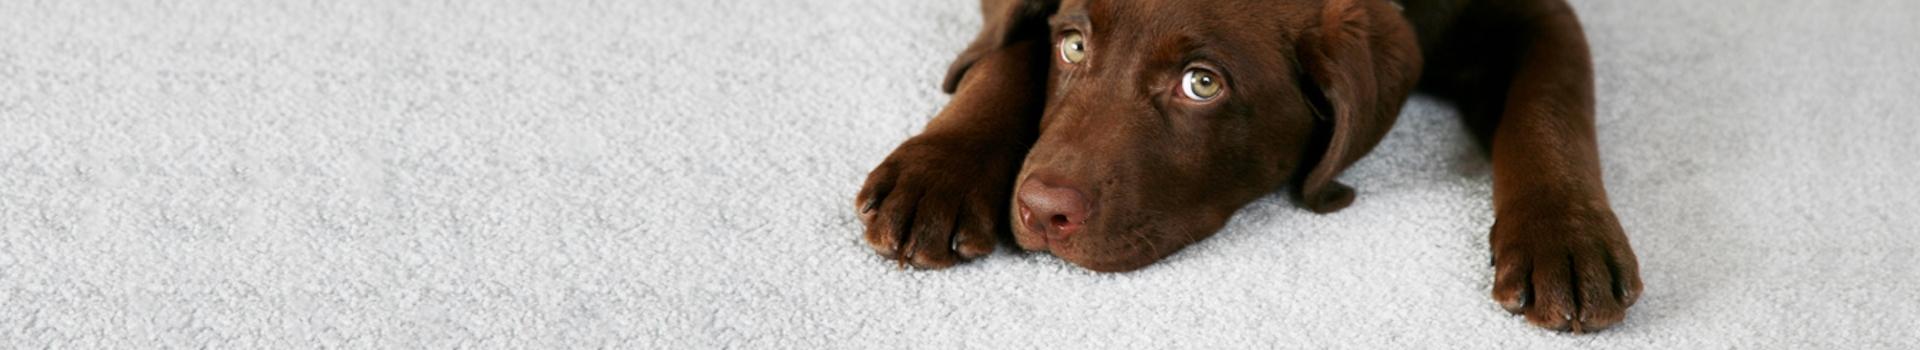 Pet Friendly Carpets